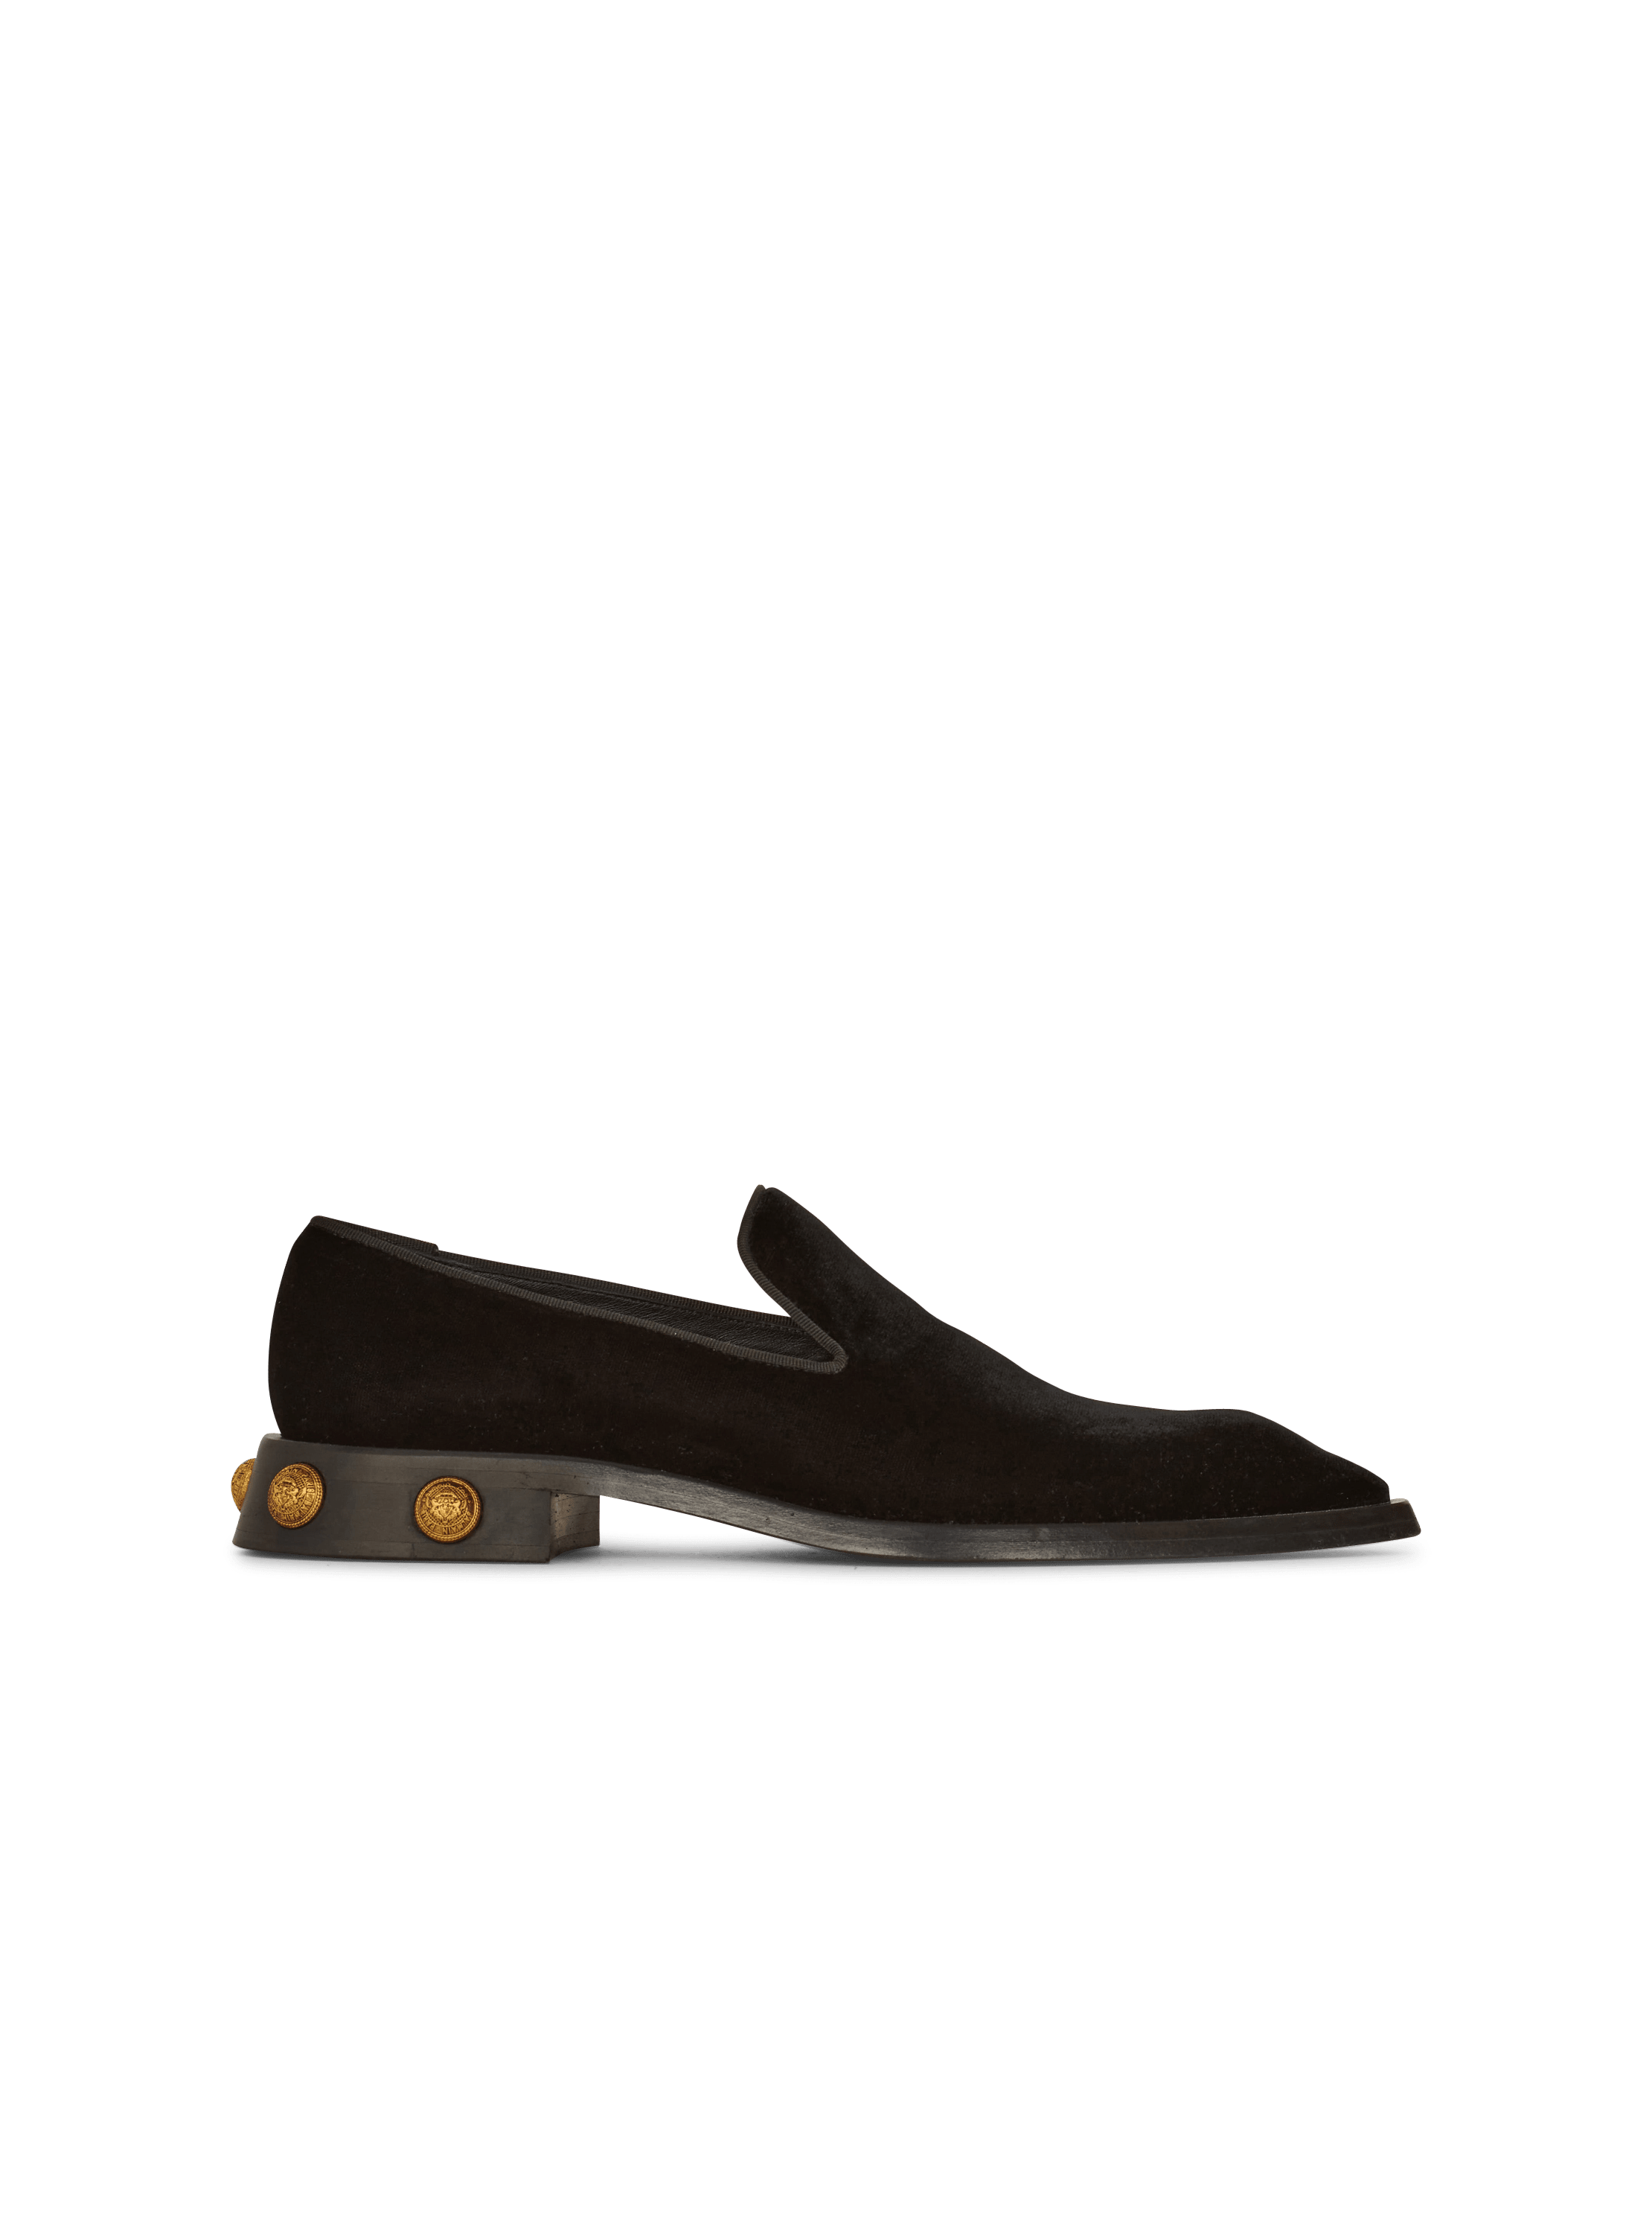 LV Major Loafer Black (11.5 US) - Shoes